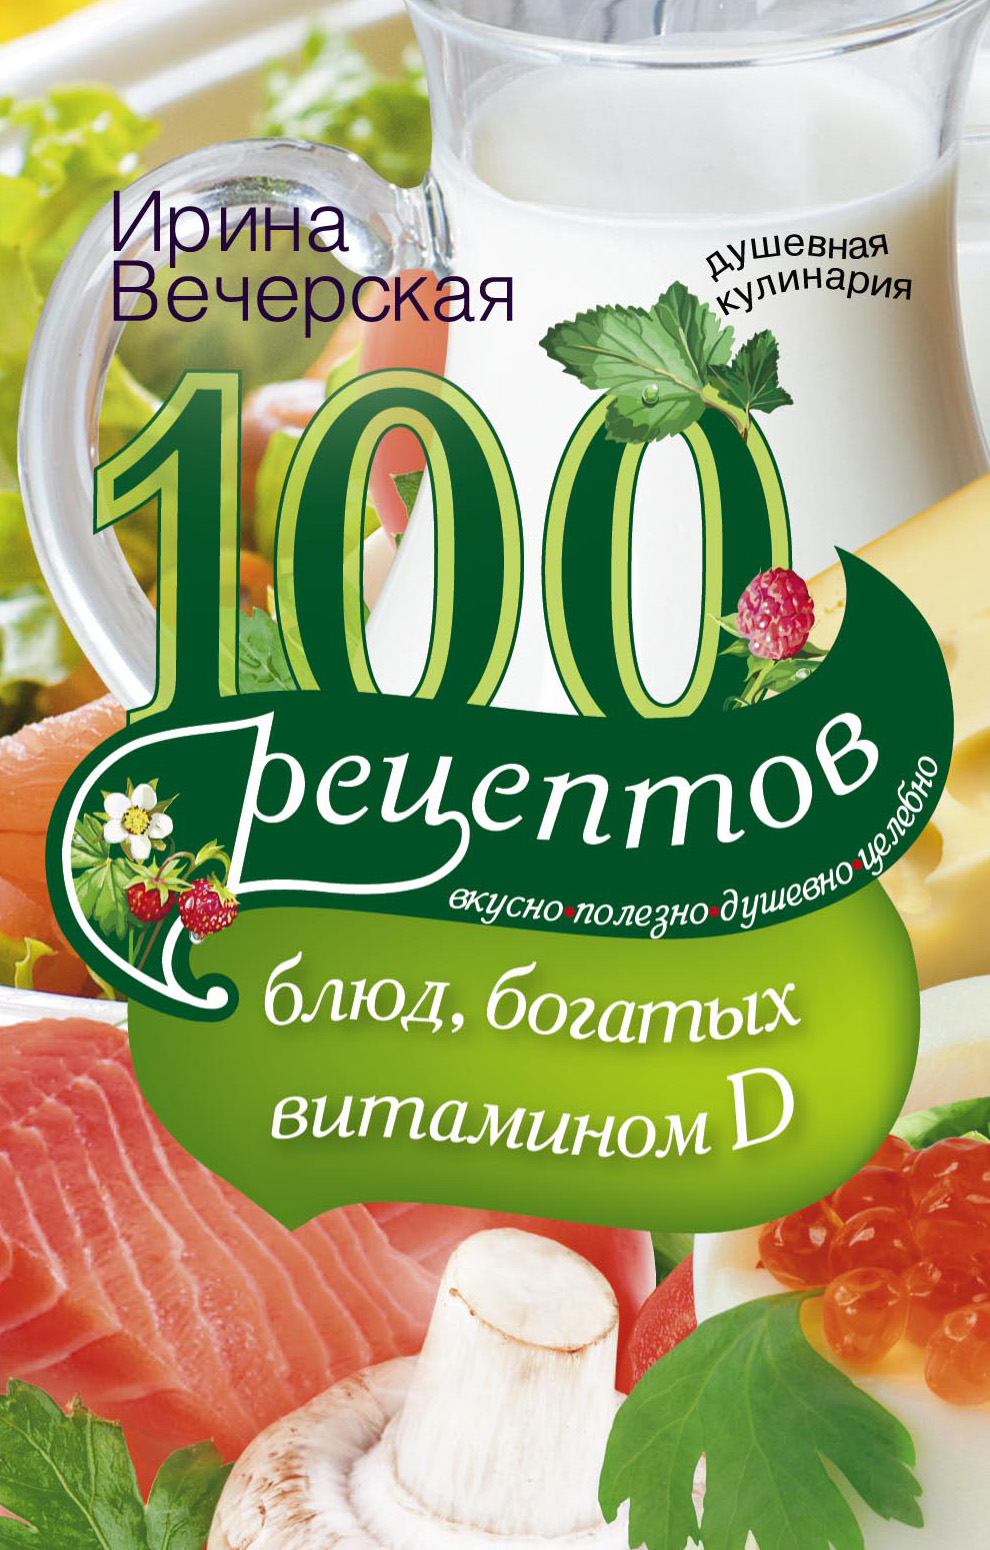 100рецептов блюд, богатыми витамином D. Вкусно, полезно, душевно, целебно